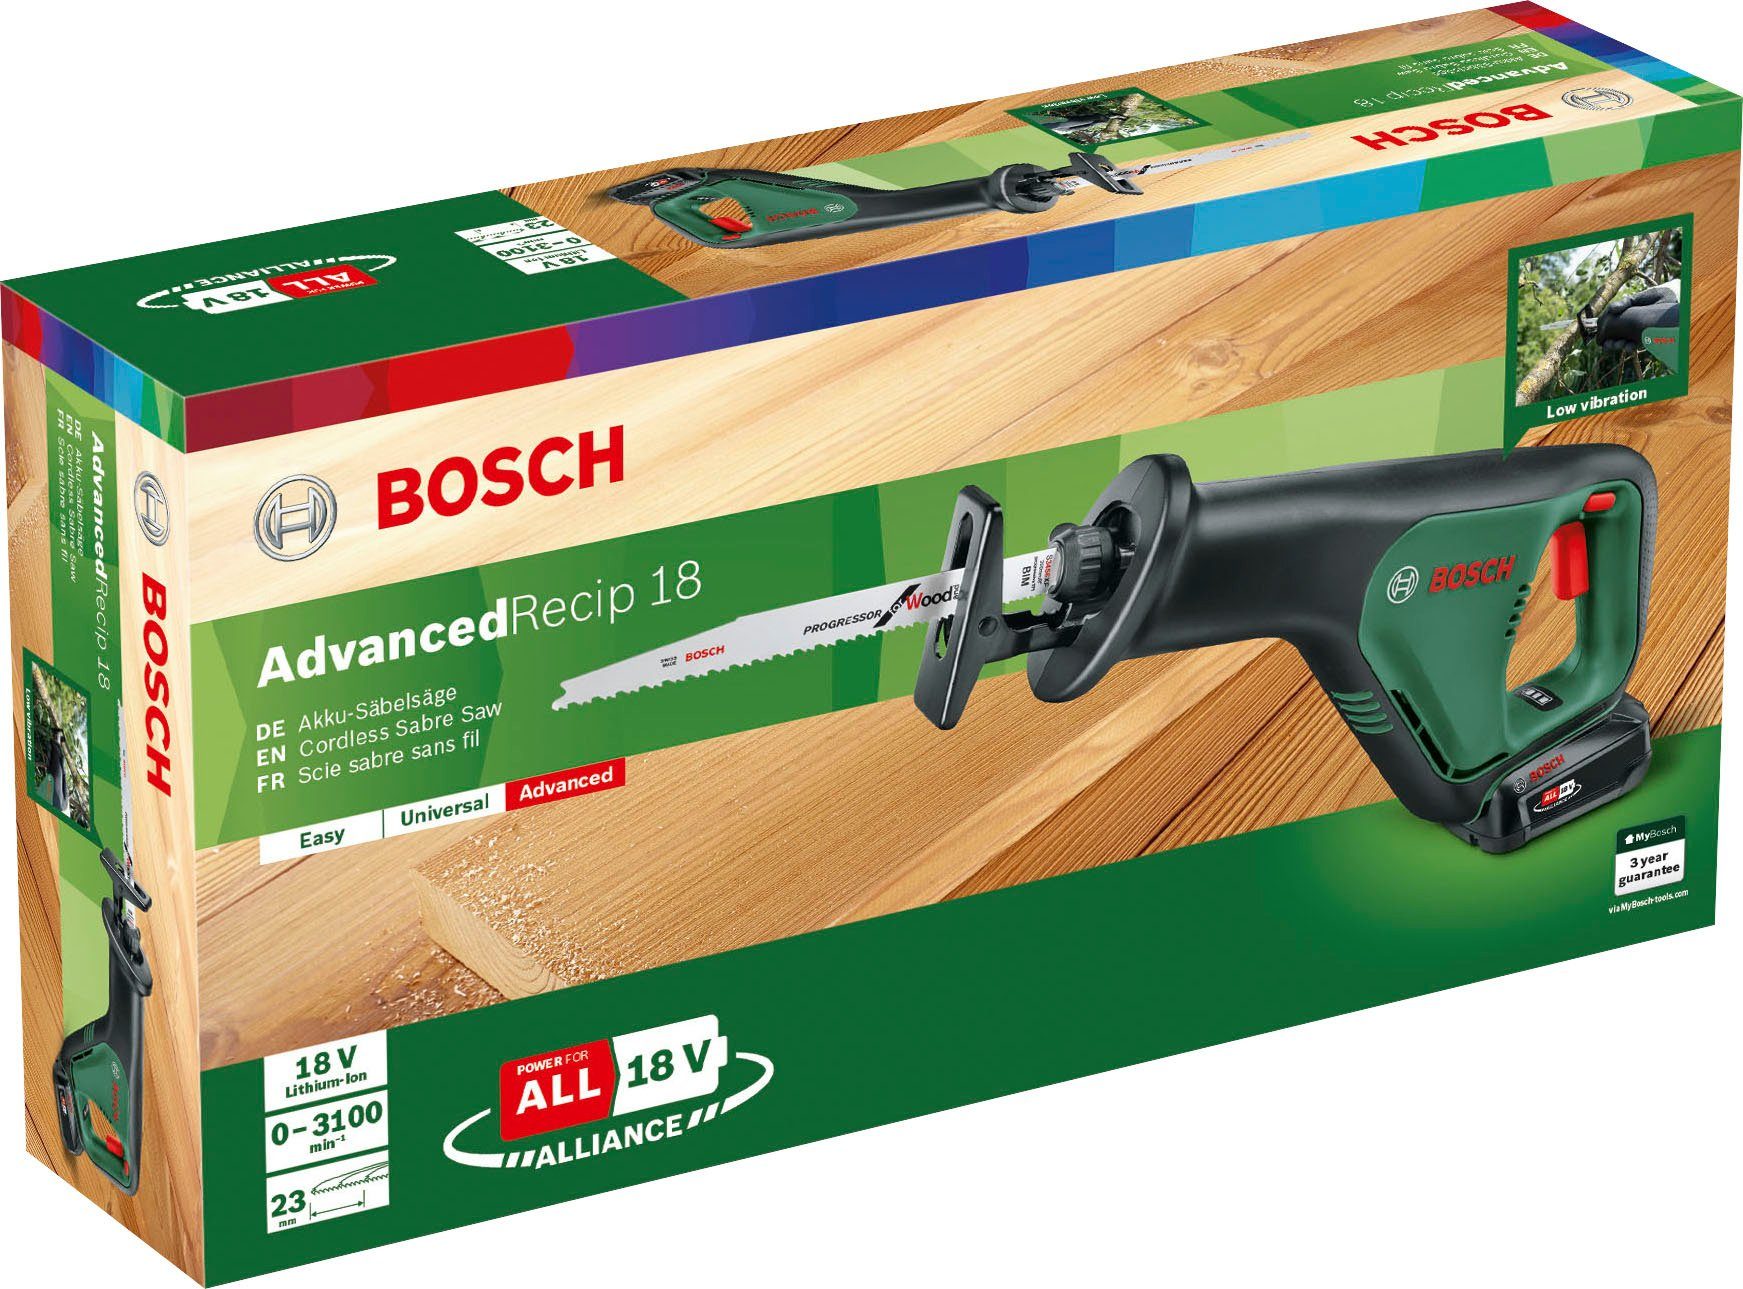 Bosch Home inkl. und & Ladegerät Akku AdvancedRecip Garden Akku-Säbelsäge 18